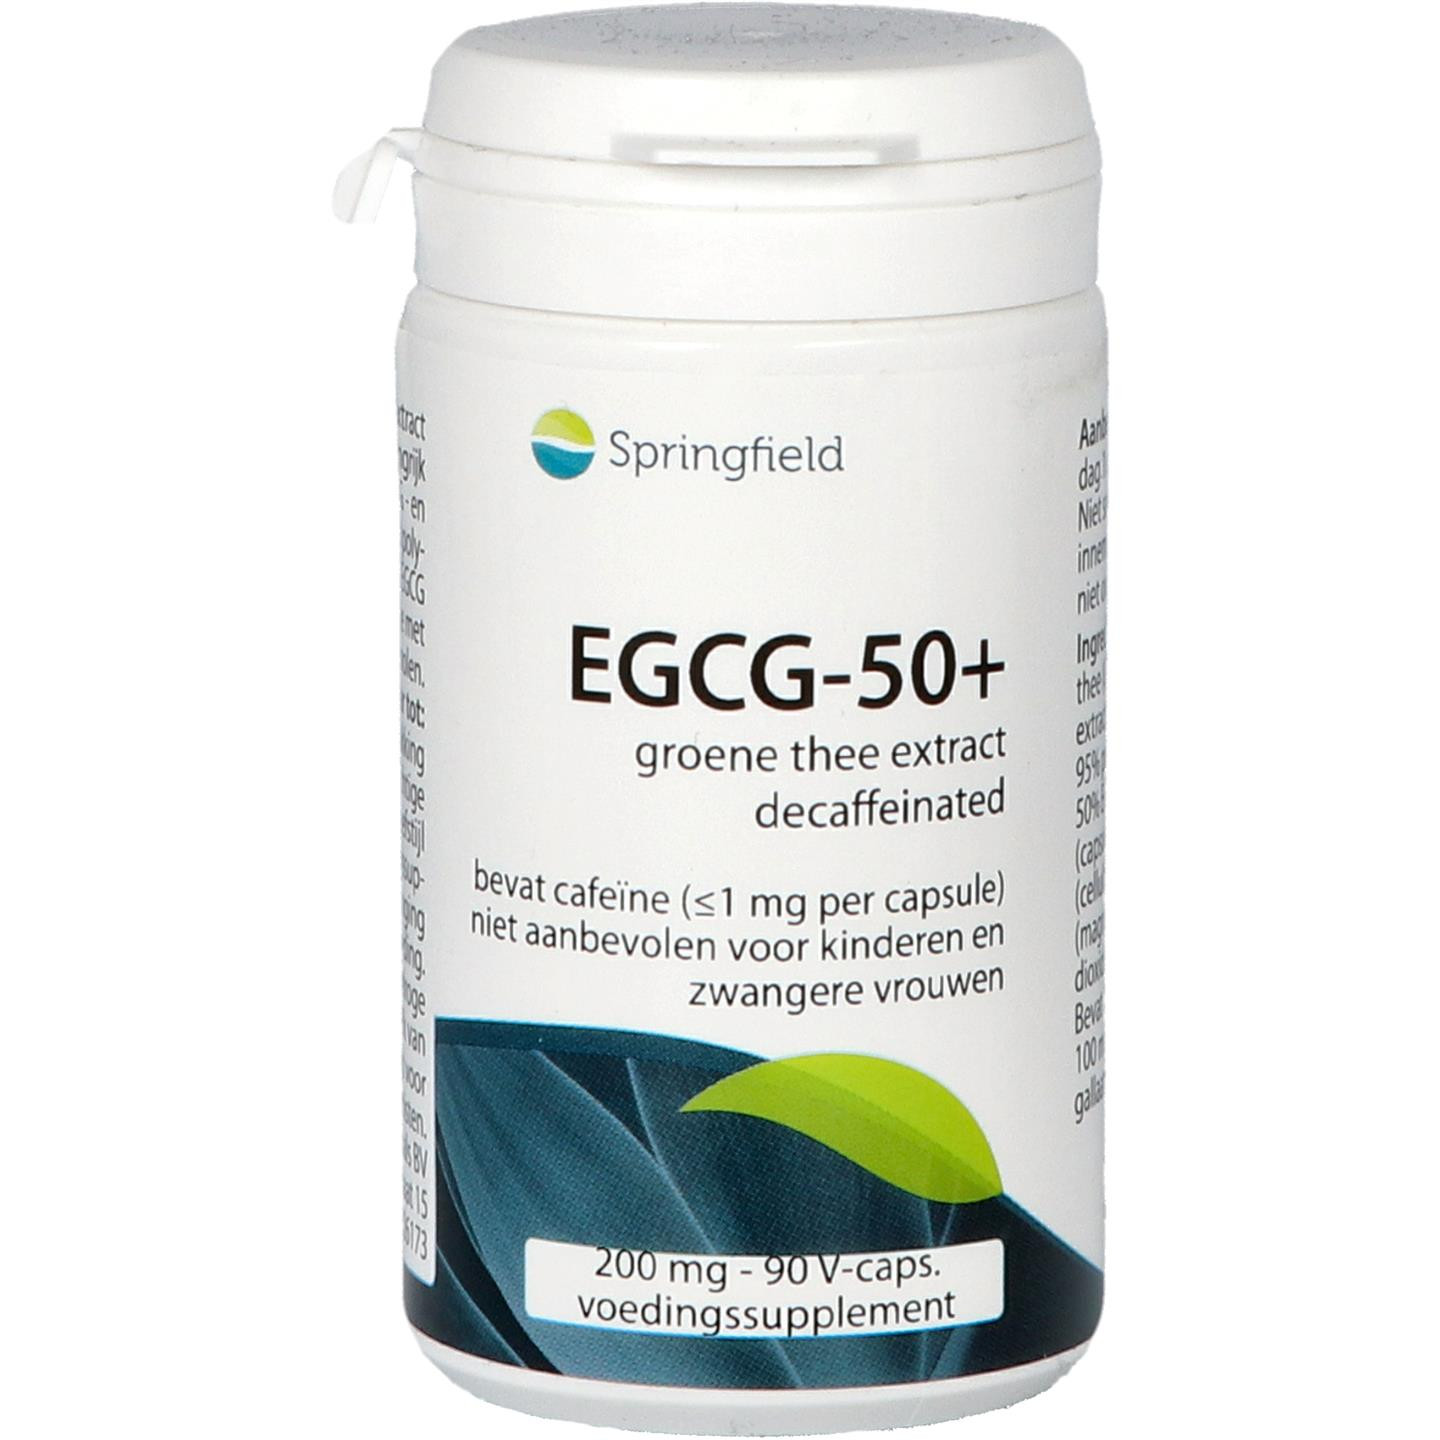 EGCG-50+ Groene thee extract